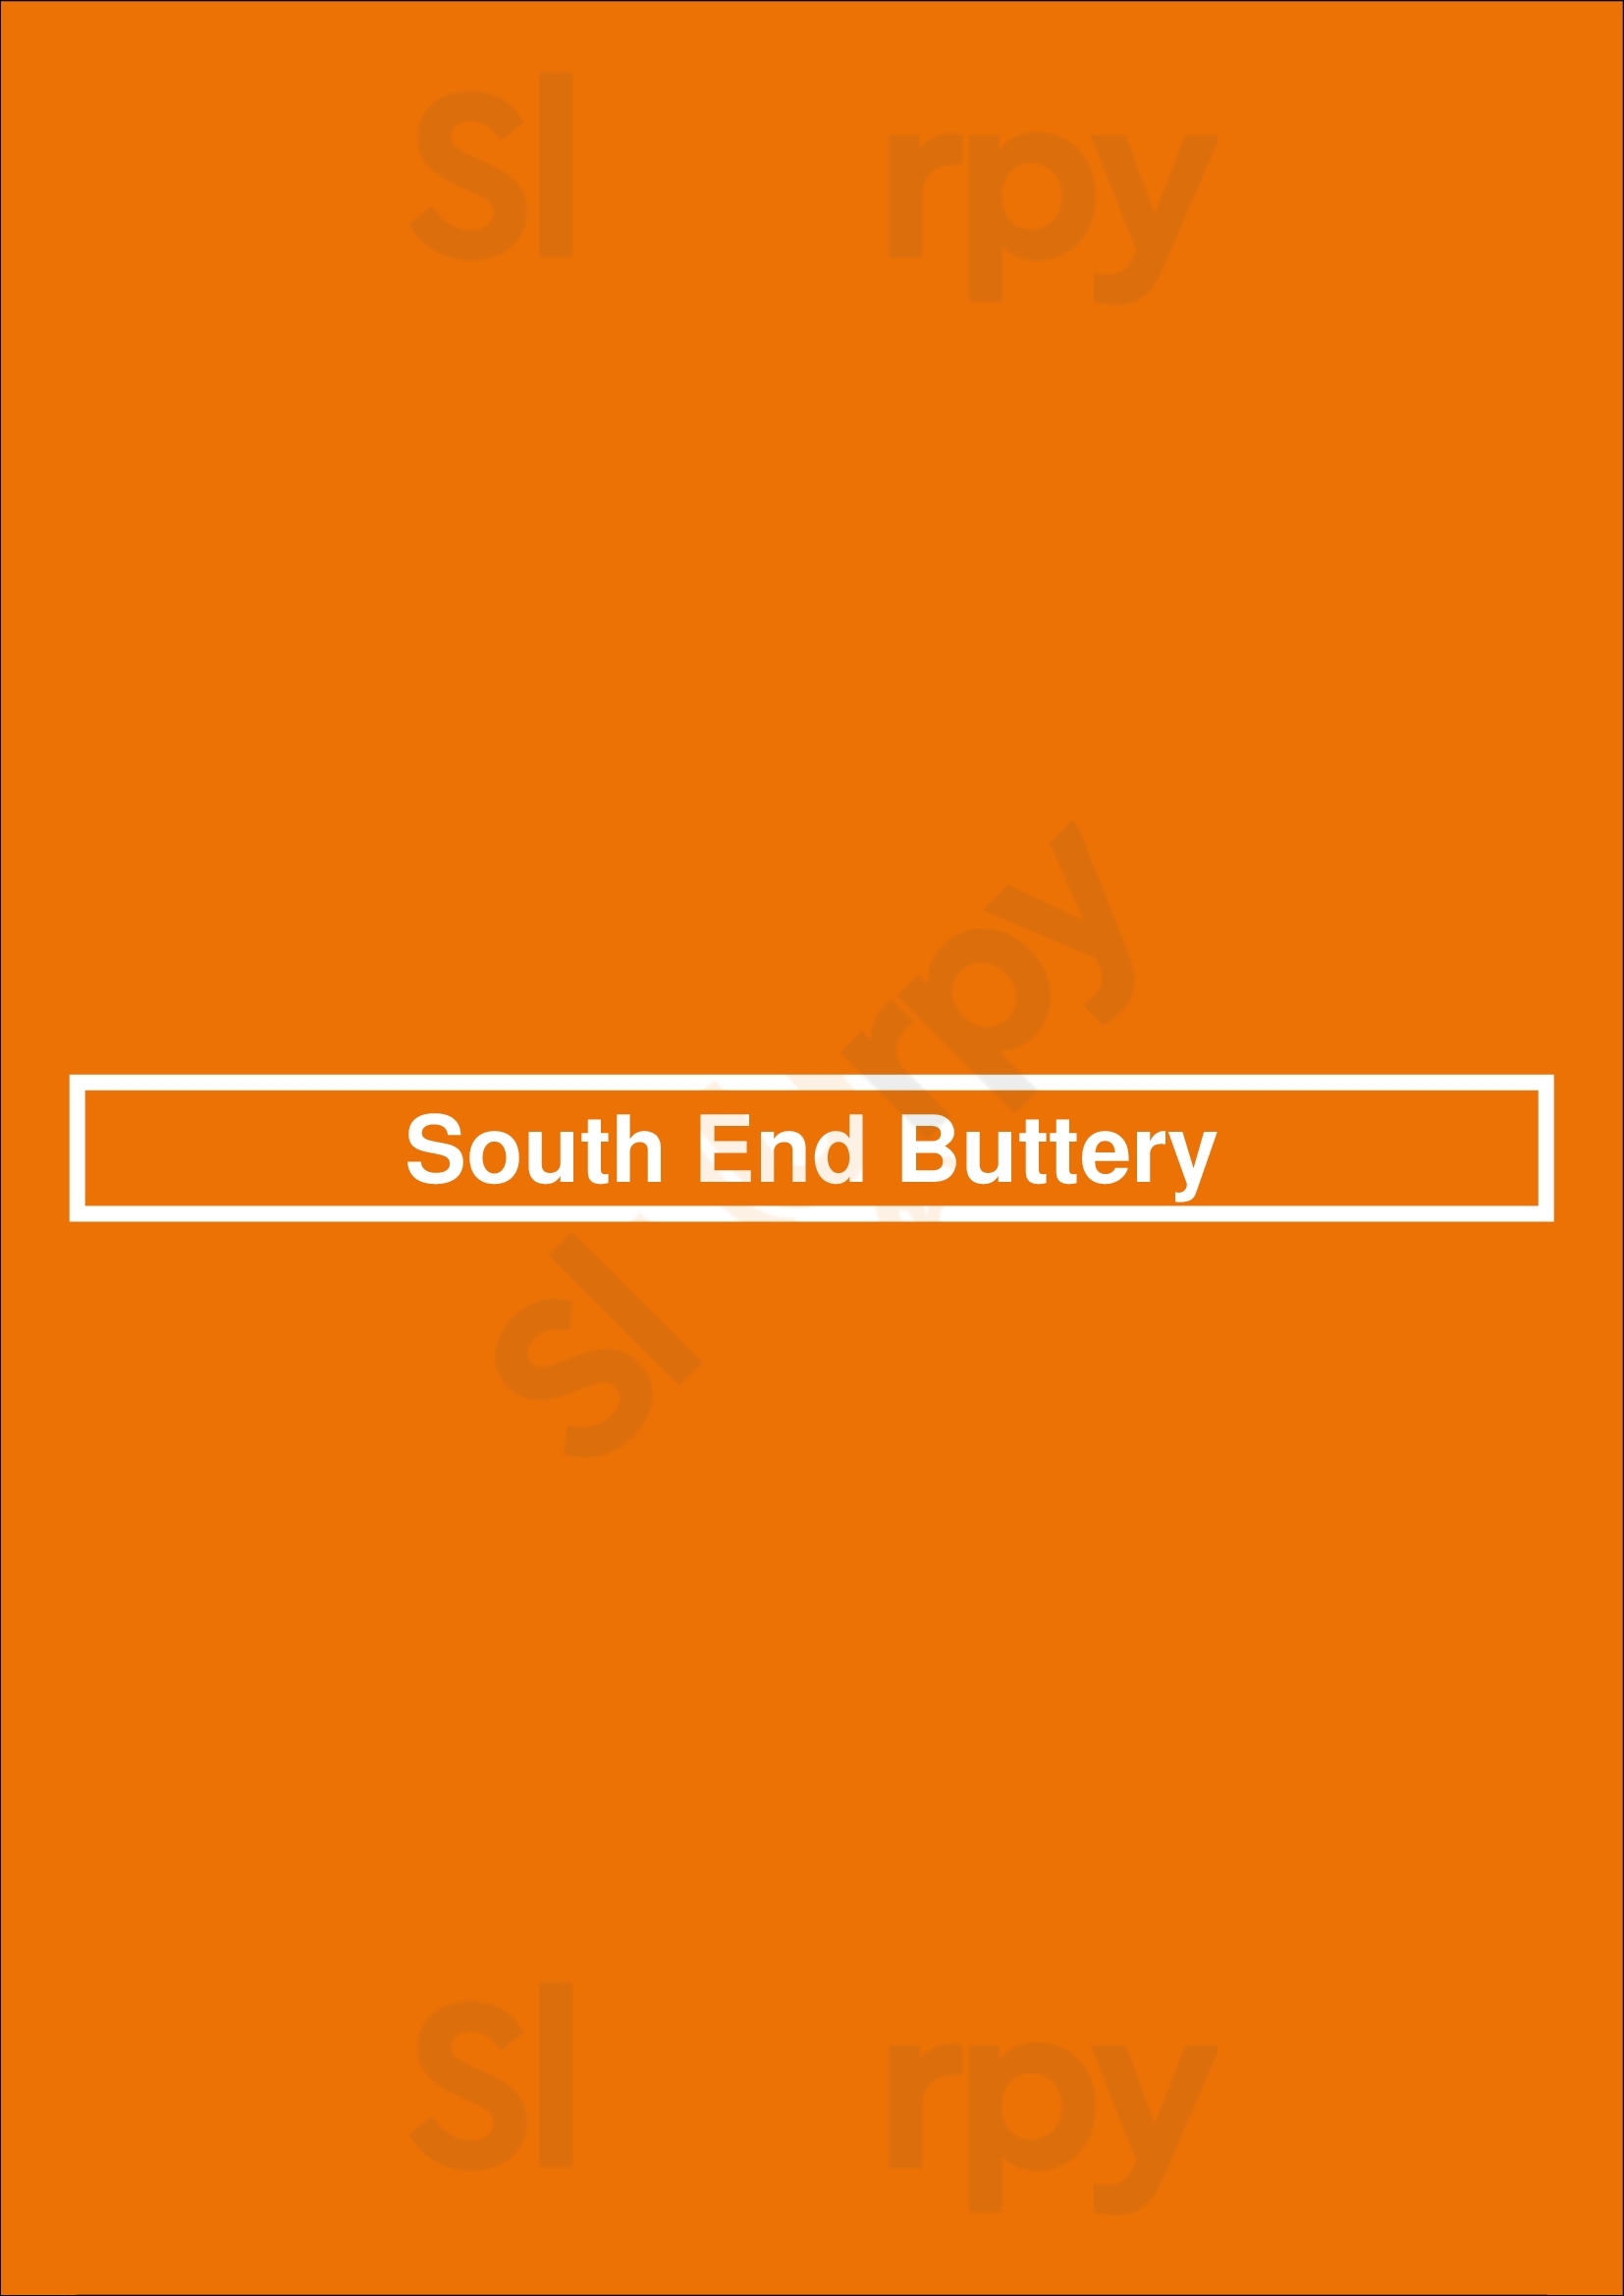 South End Buttery Boston Menu - 1